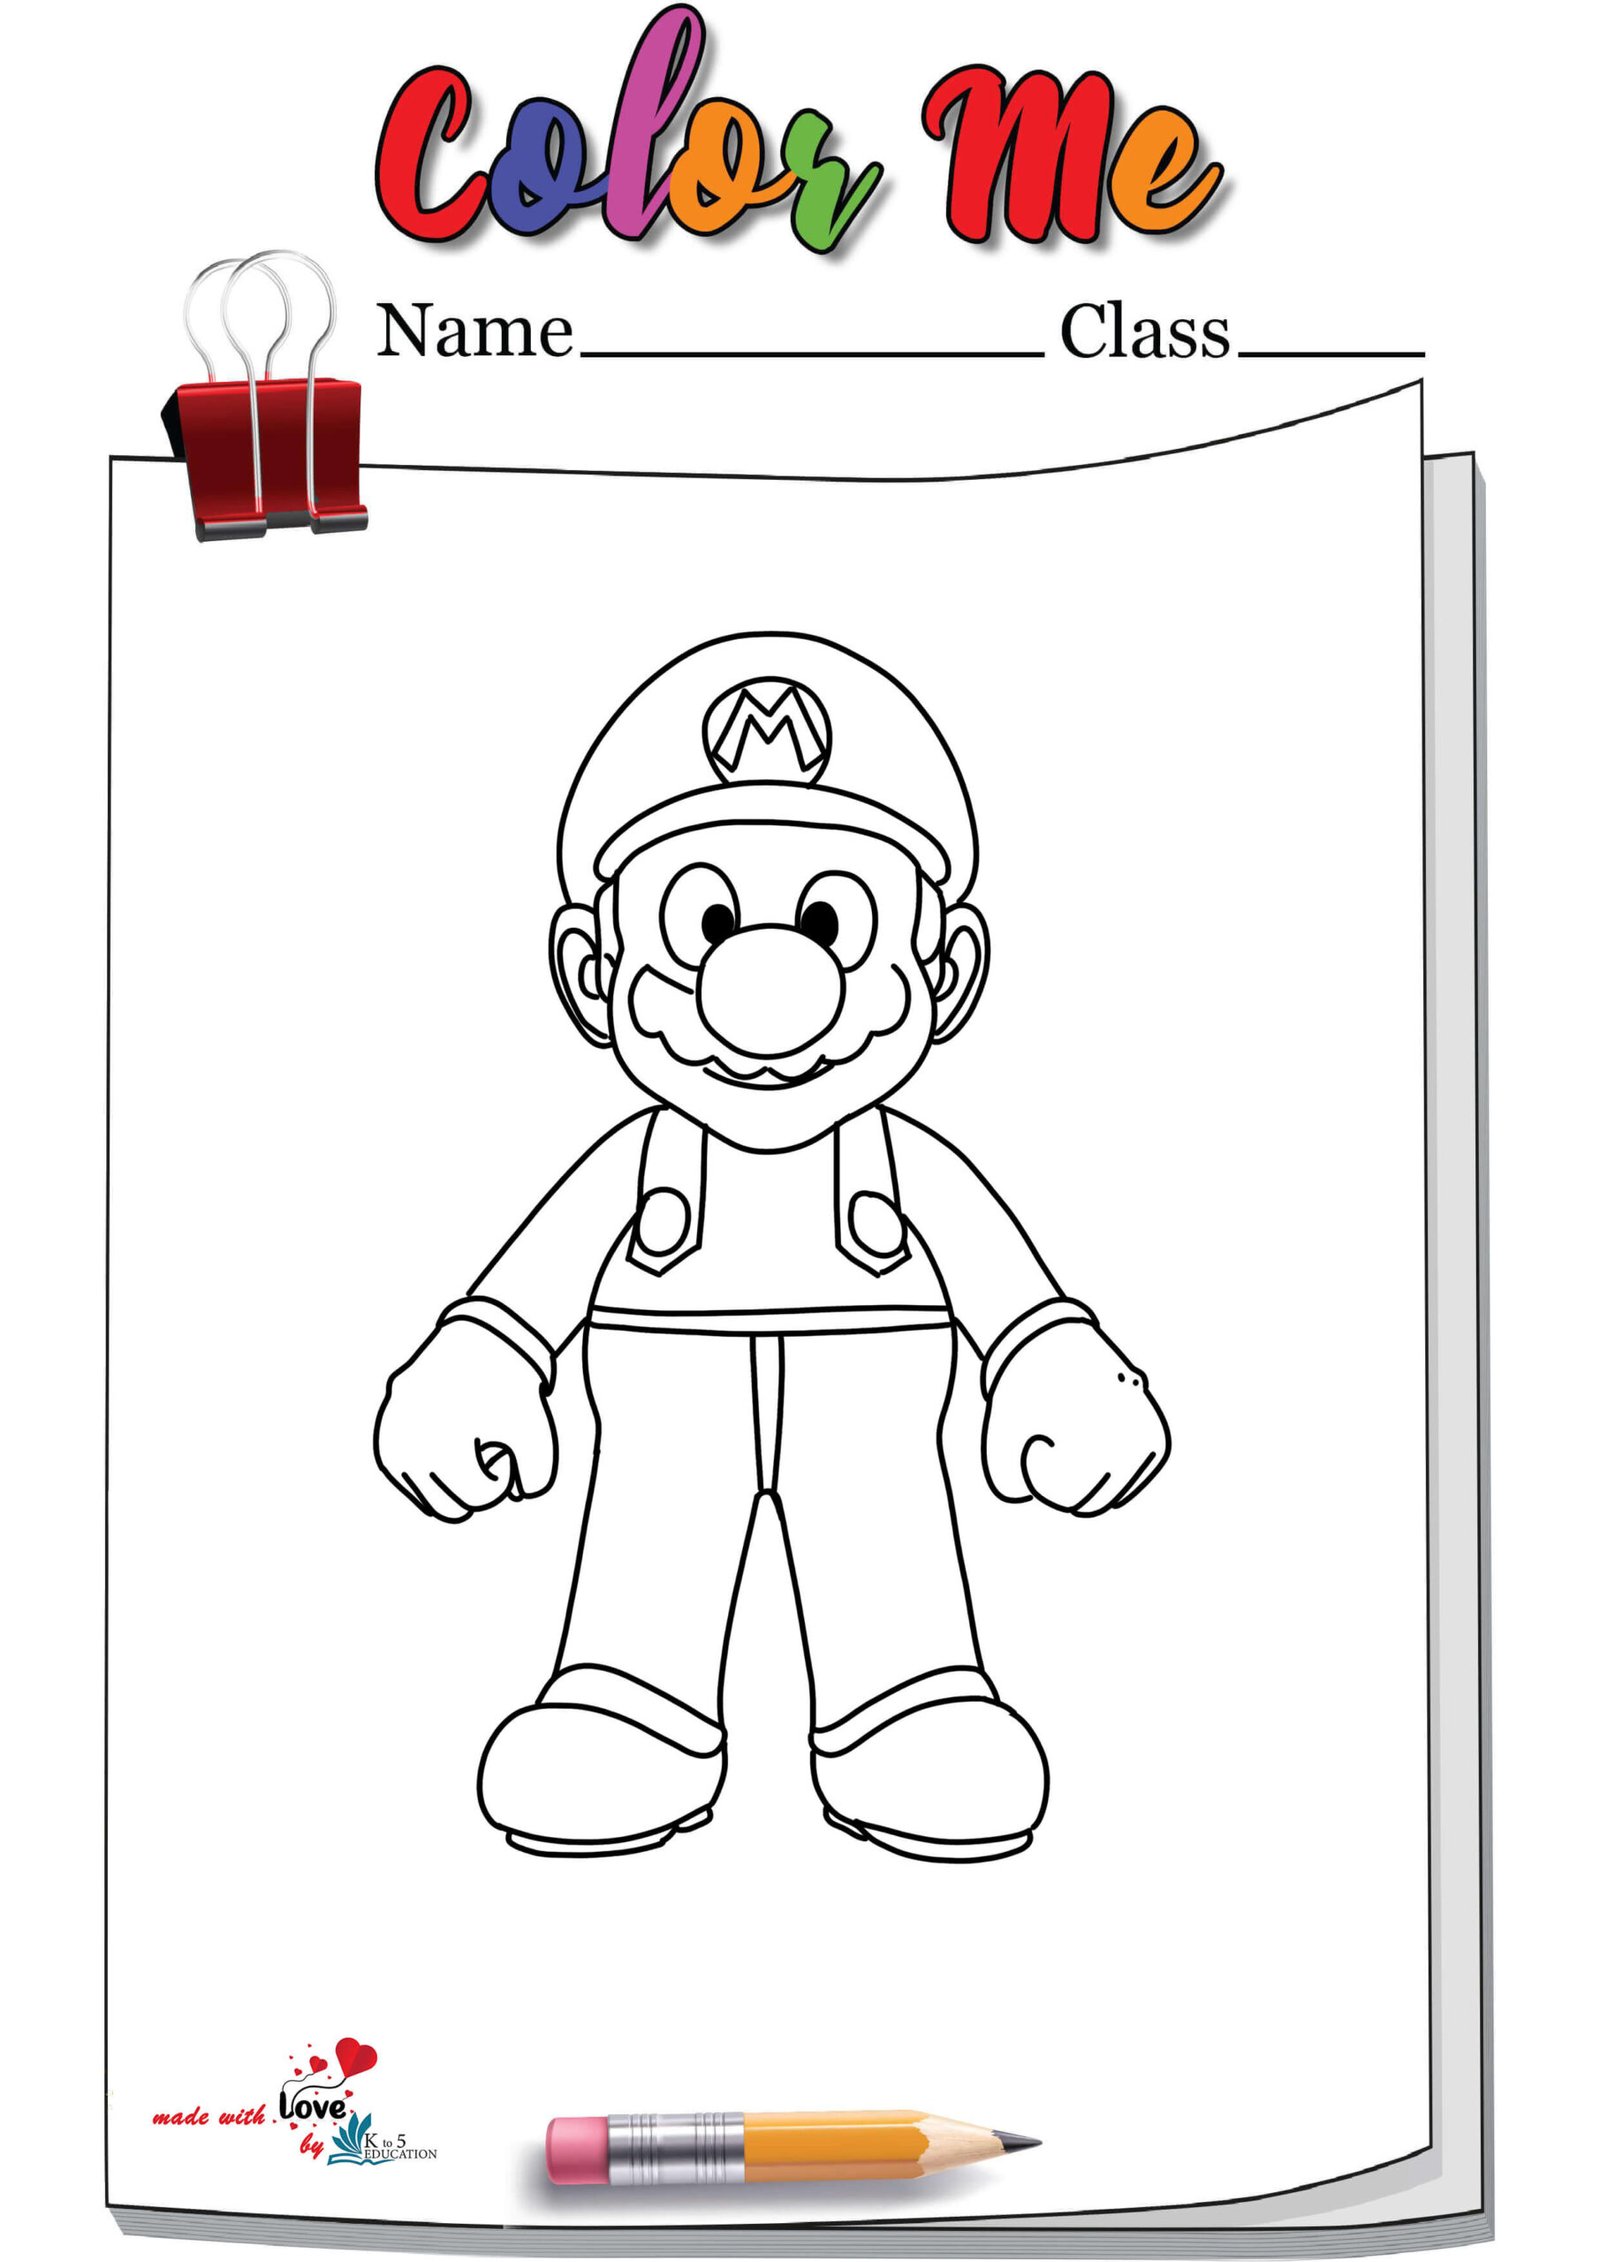 Mario Coloring Page